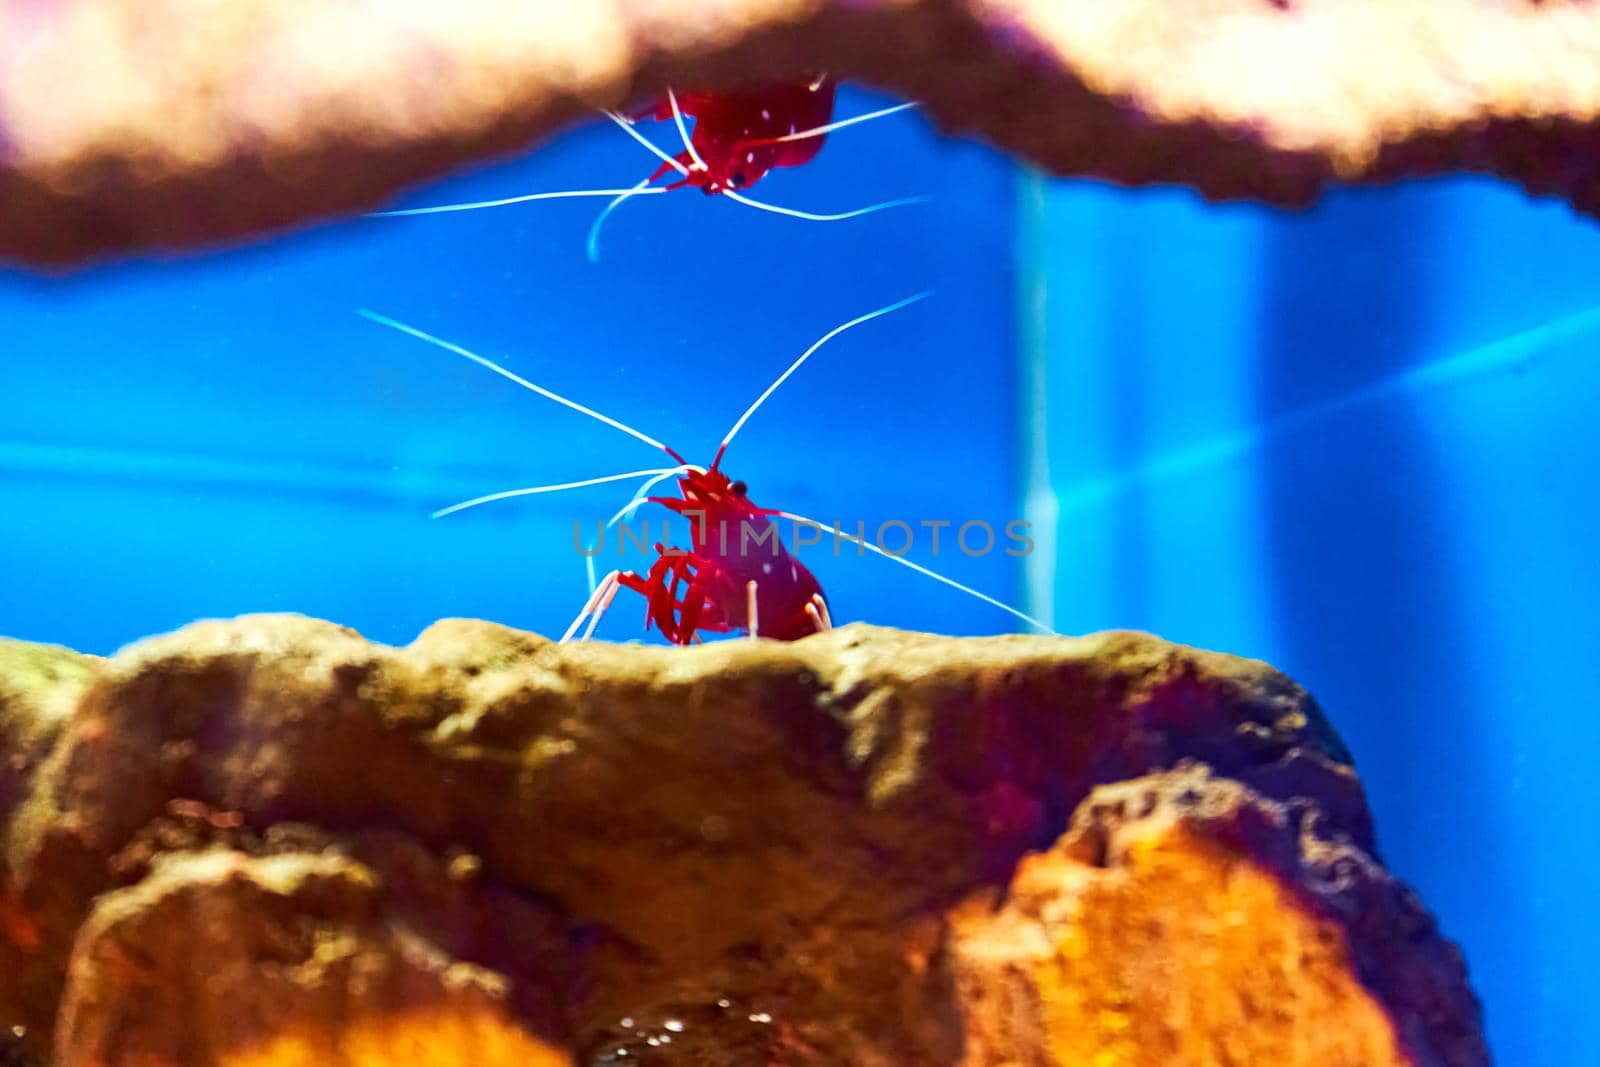 Sea shrimp in the aquarium. Inhabitants of the underwater world